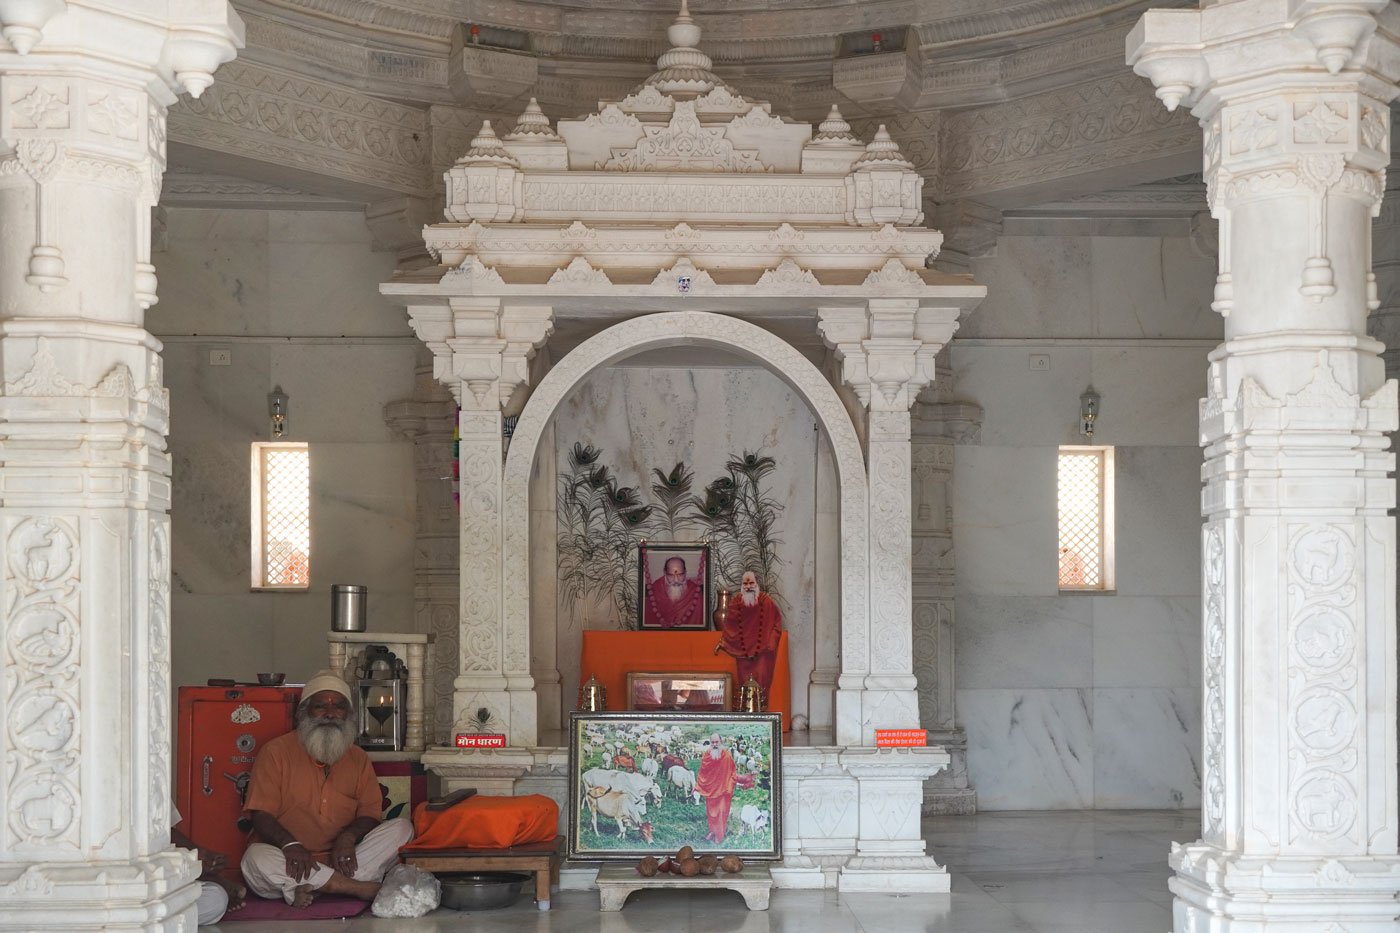 The Samadhi shrine of the founder of the library, Harvansh Singh Nirmal